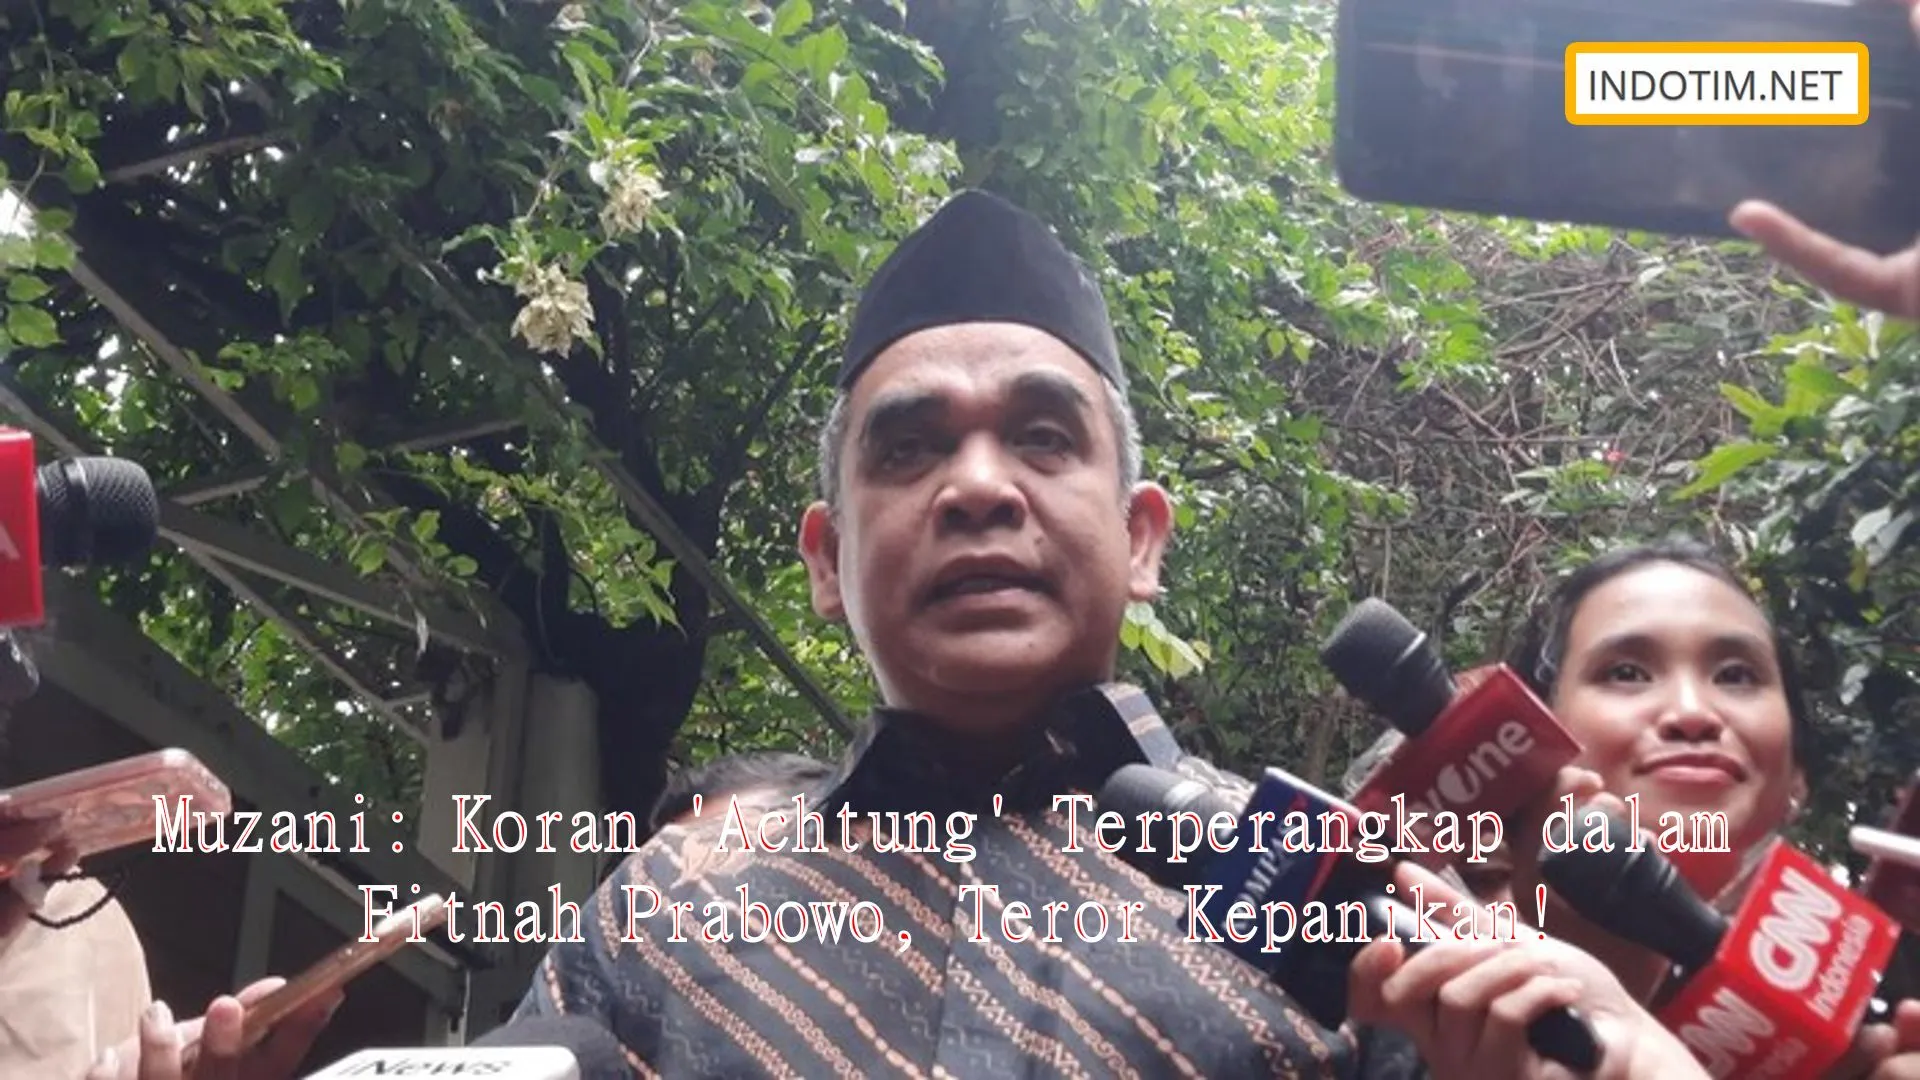 Muzani: Koran 'Achtung' Terperangkap dalam Fitnah Prabowo, Teror Kepanikan!